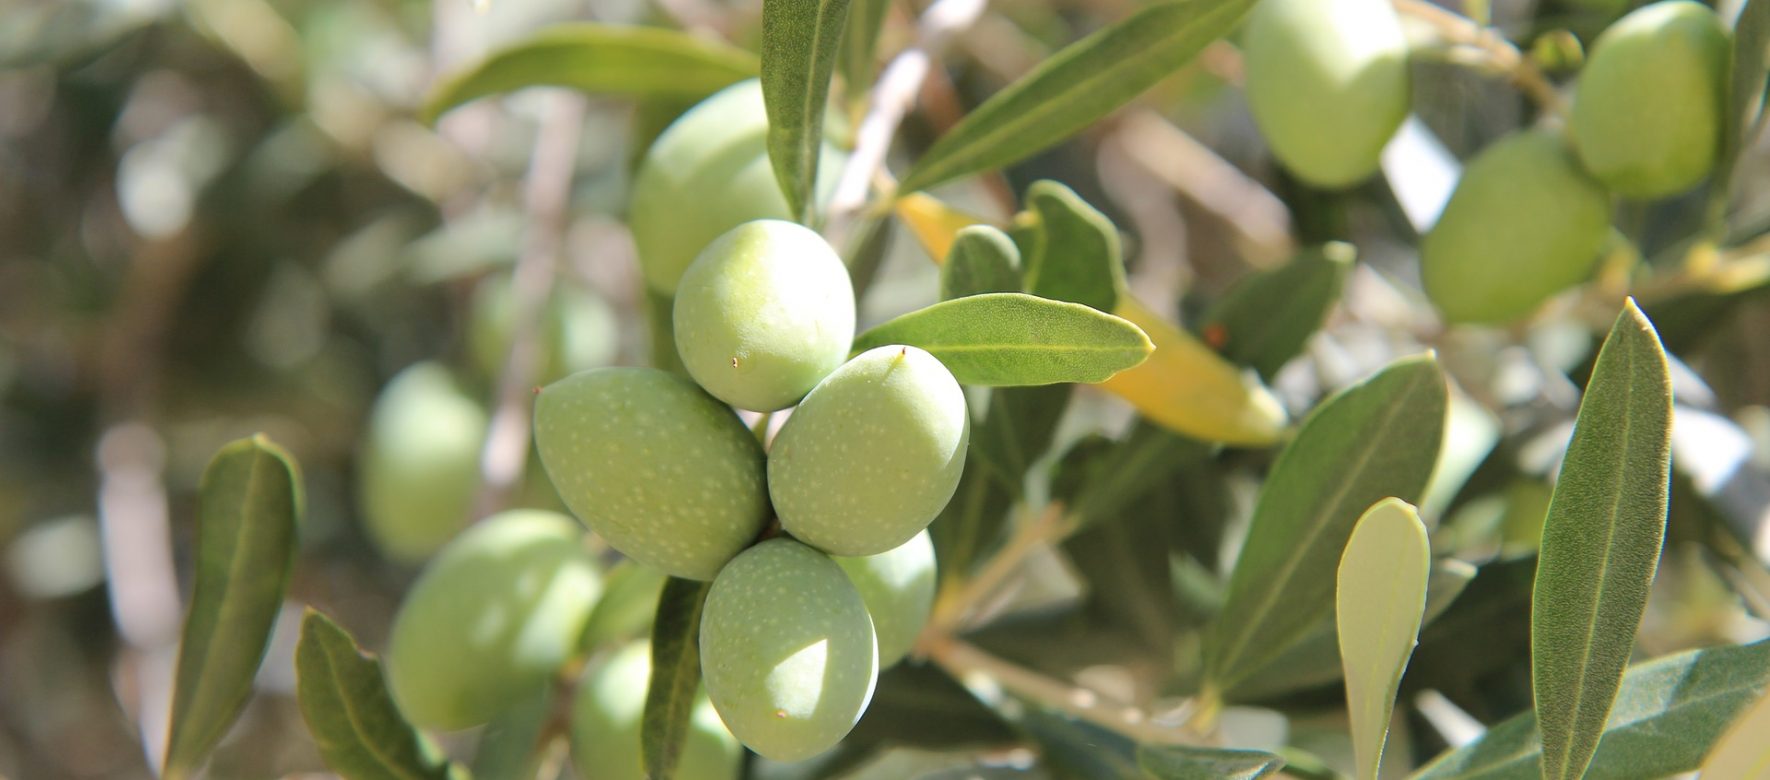 Maroc : La récolte d’olive devrait être bien moins bonne que prévue en 2019